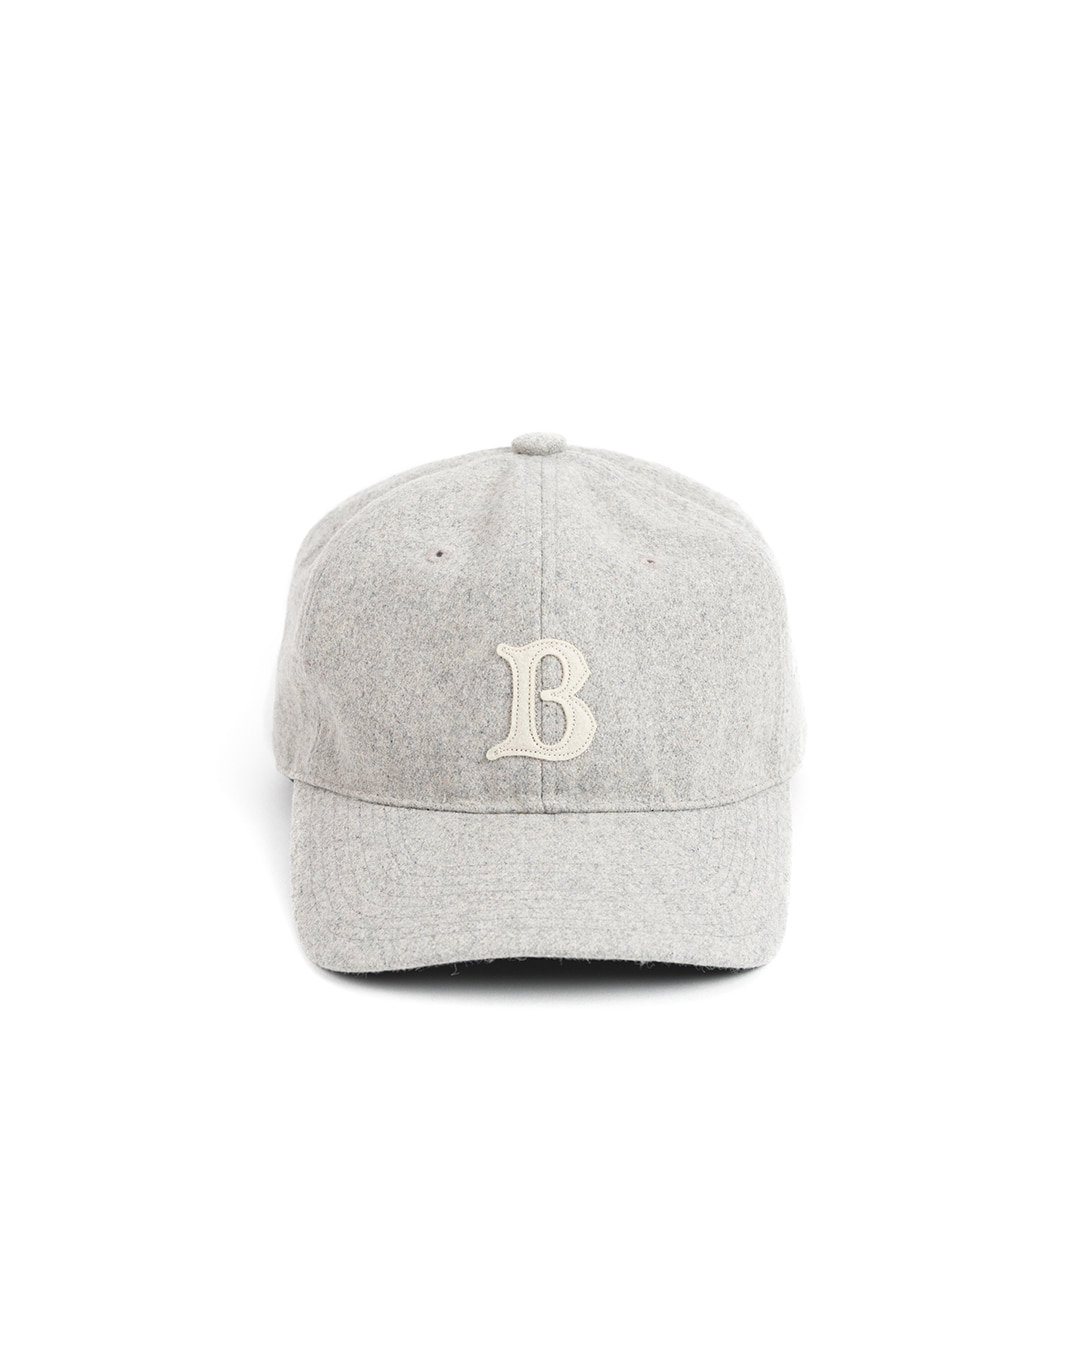 LB WOOL BASEBALL CAP (light grey)